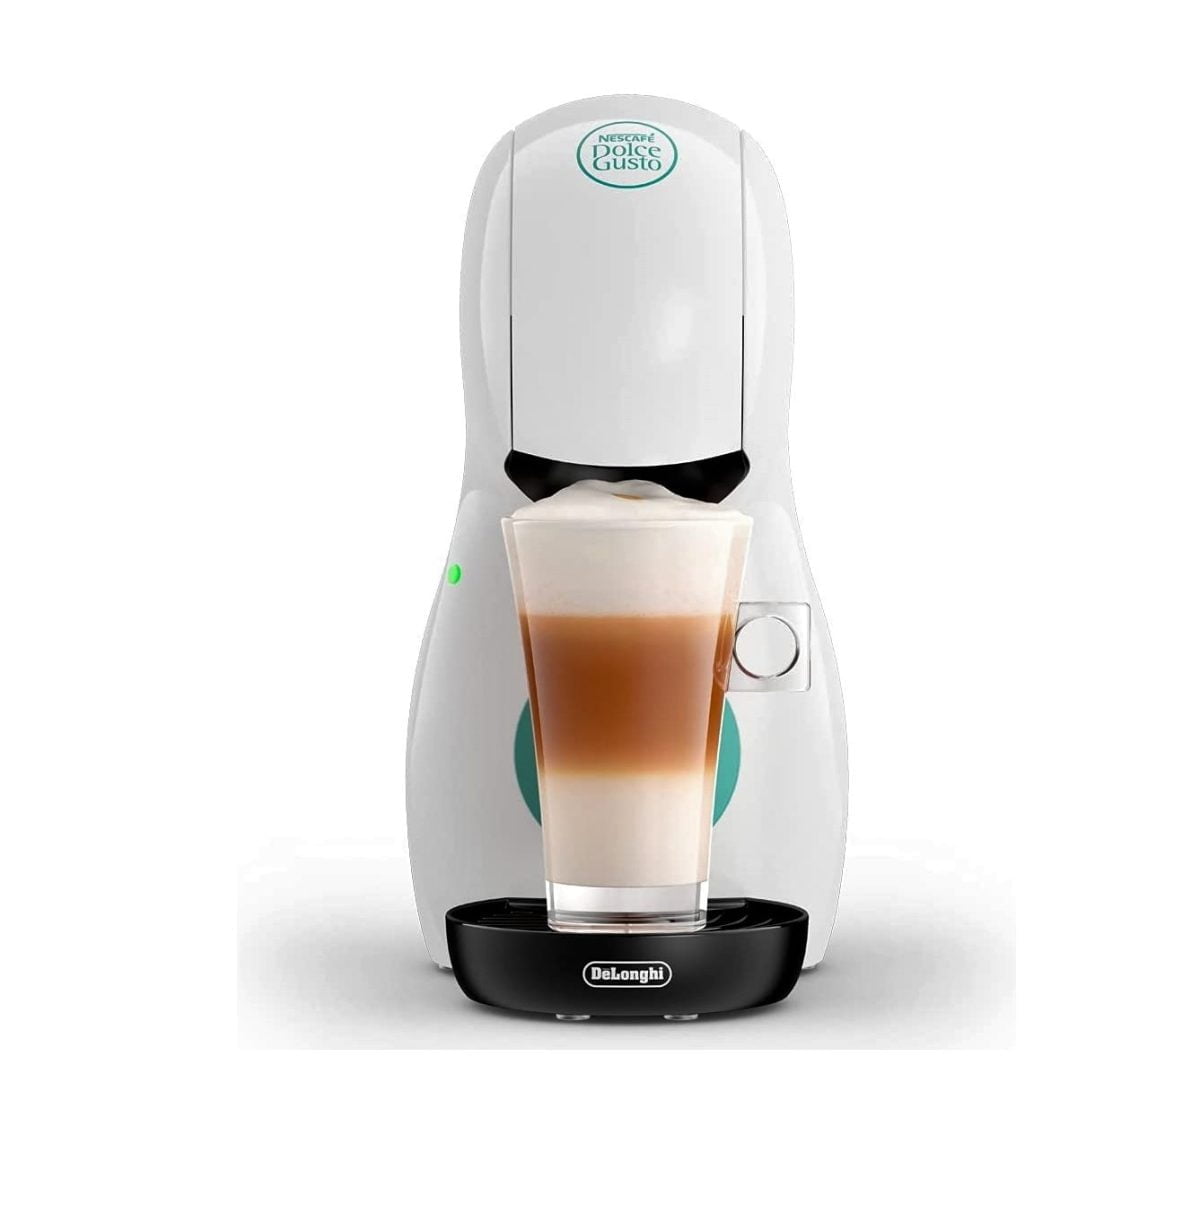 Nescafe Dolce Gusto Piccolo Xs Manual Coffee Machine – White Delonghi Edg210.W